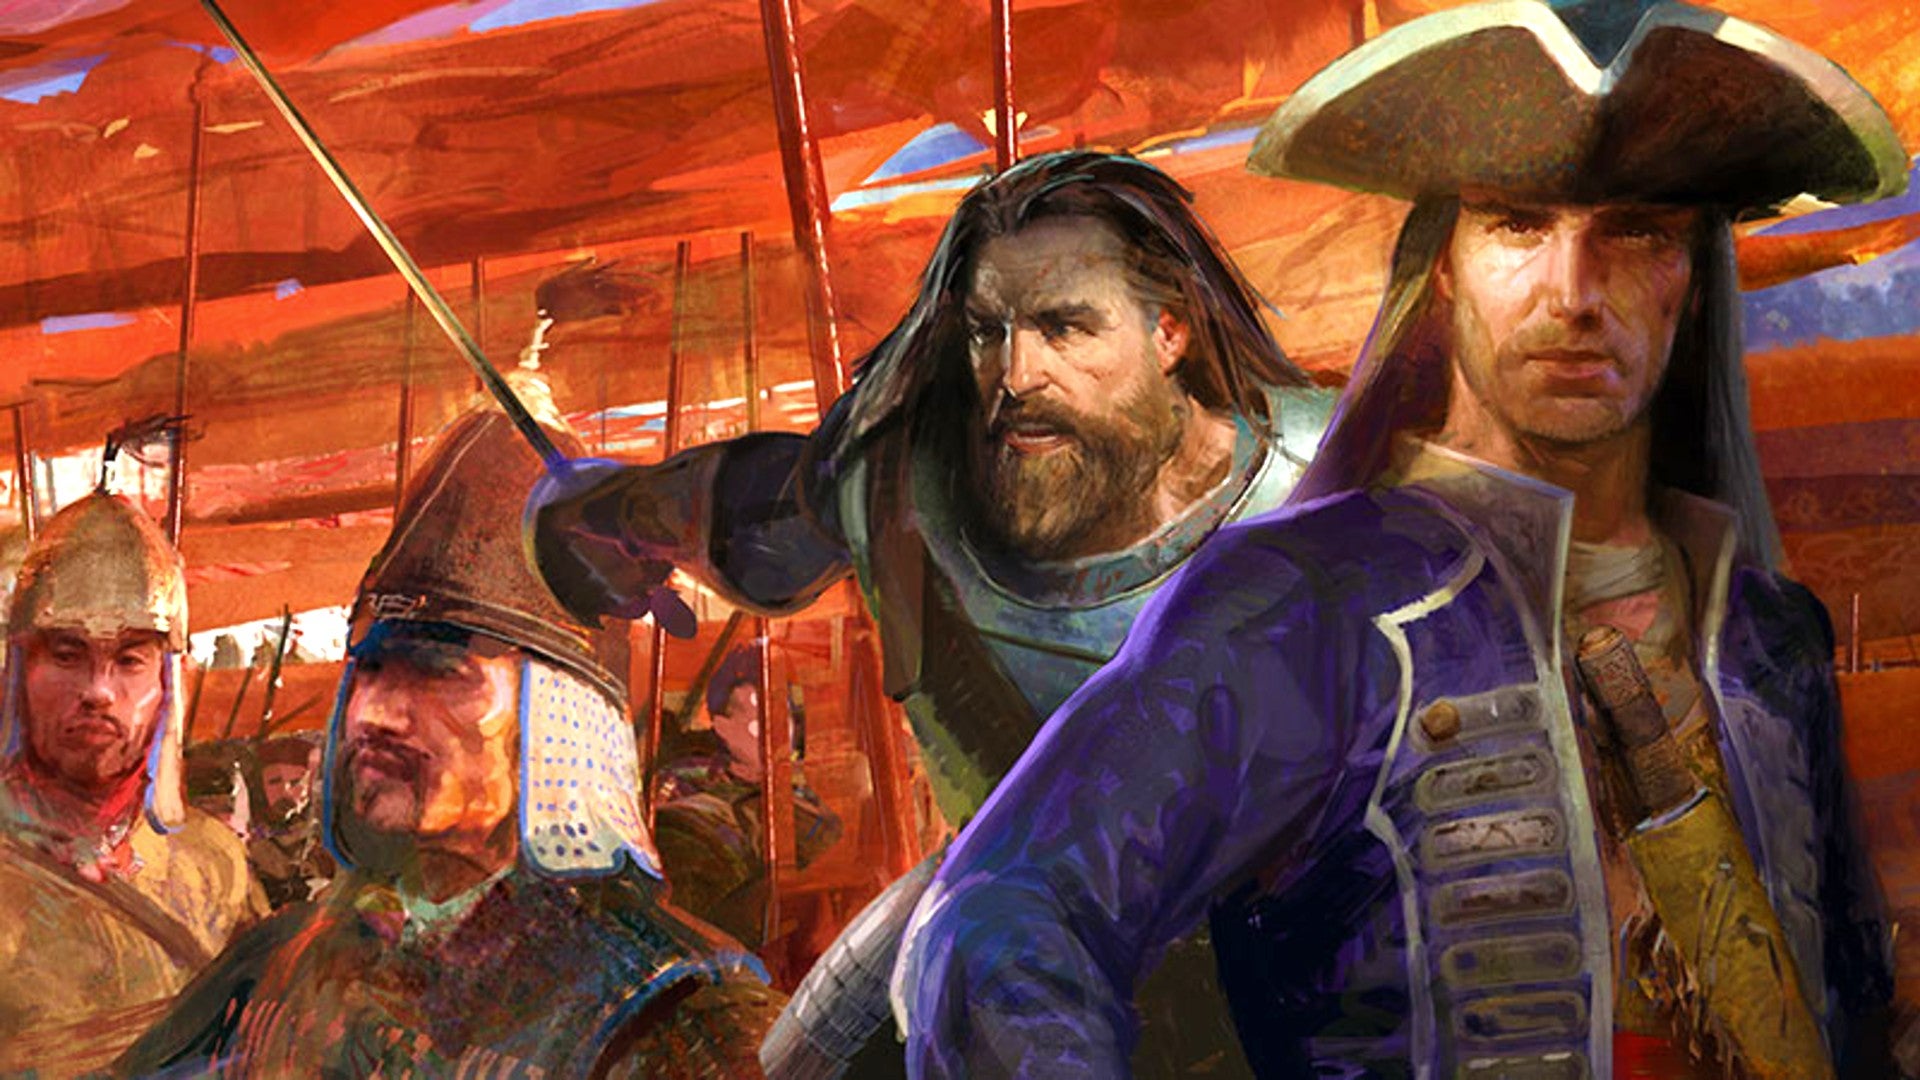 Bilder zu Age of Empires 3: Ab sofort mit dem Kumpel in den Koop stürzen